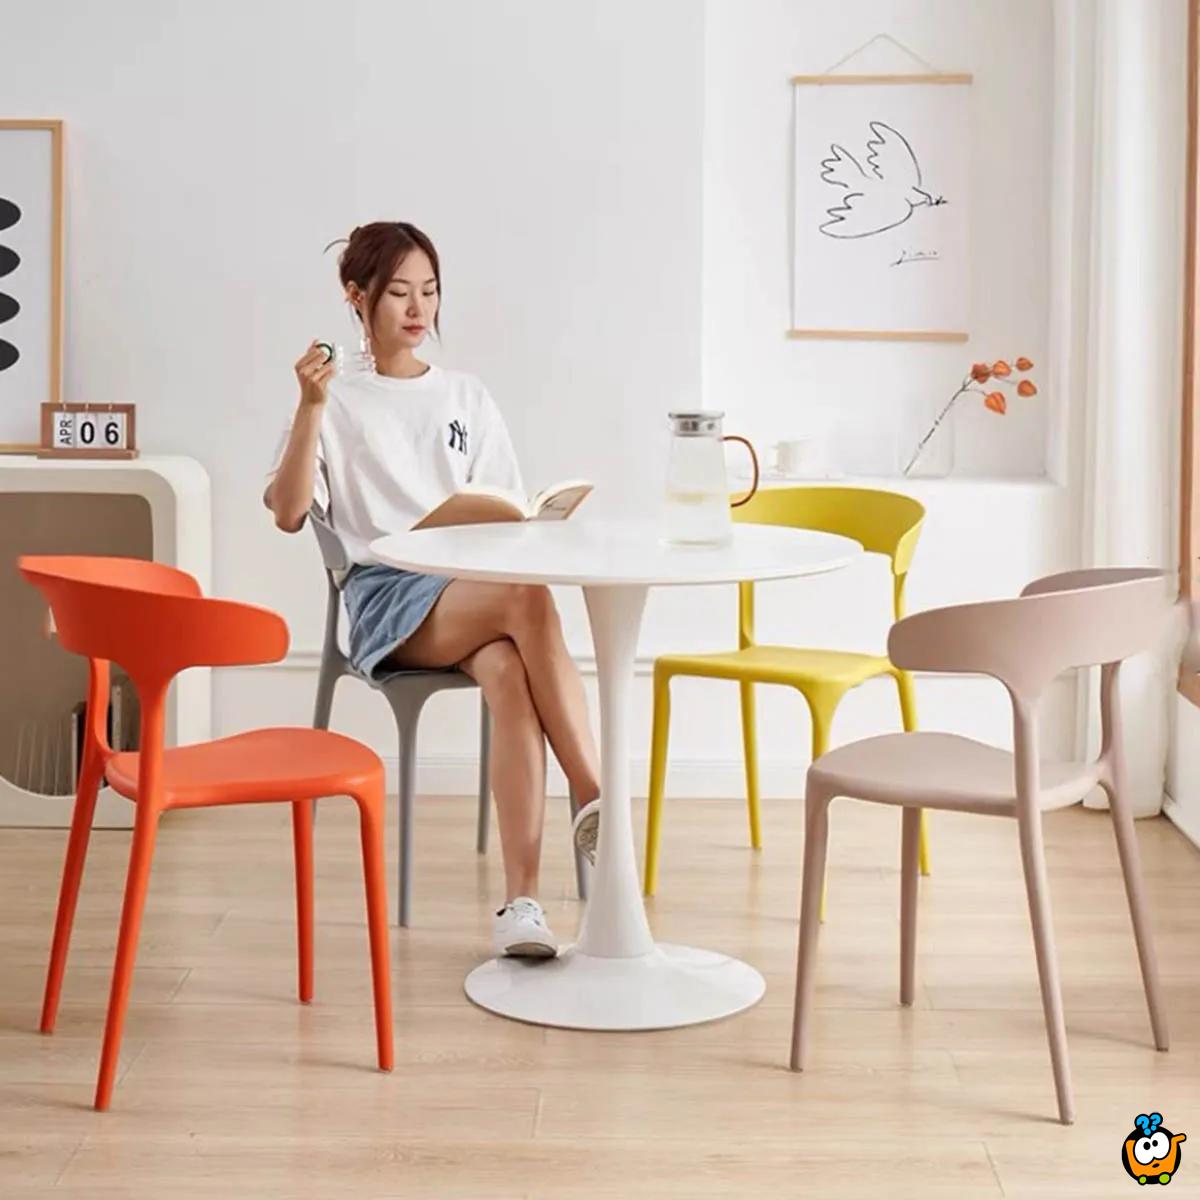 Pastelne stolice vrhunskog dizajna za trpezariju ili terasu - ŽUTA